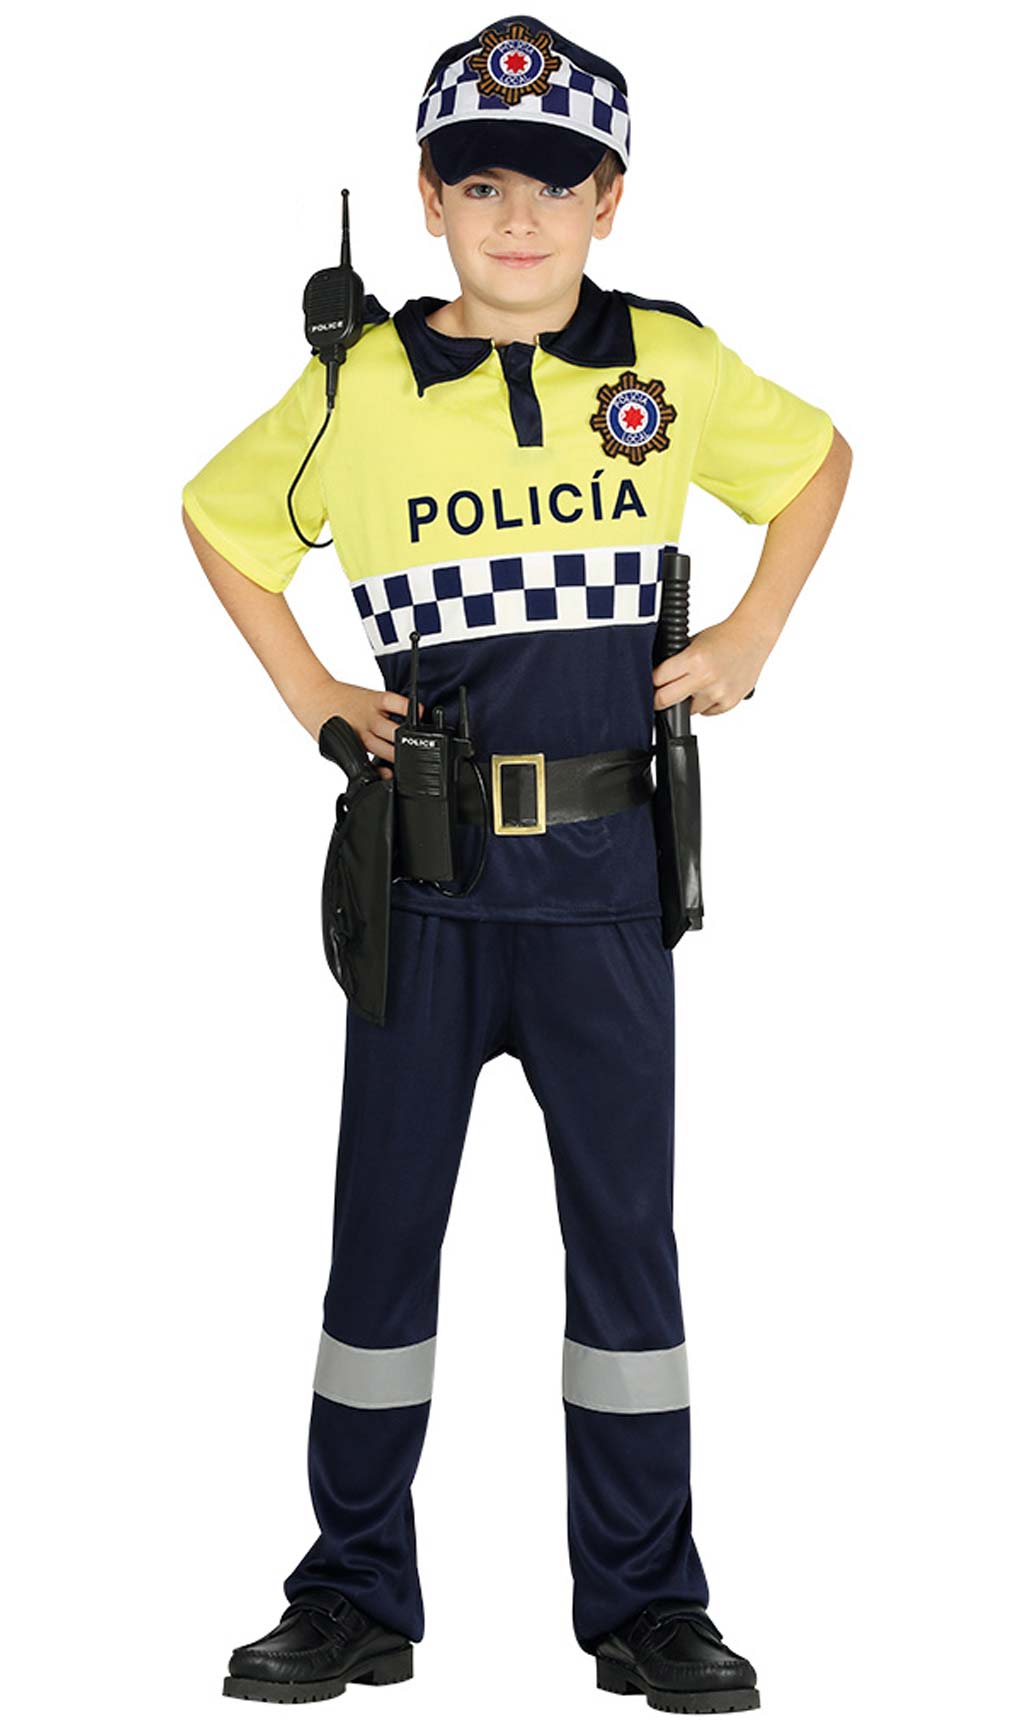 Accesorios Para Disfraz De Policia